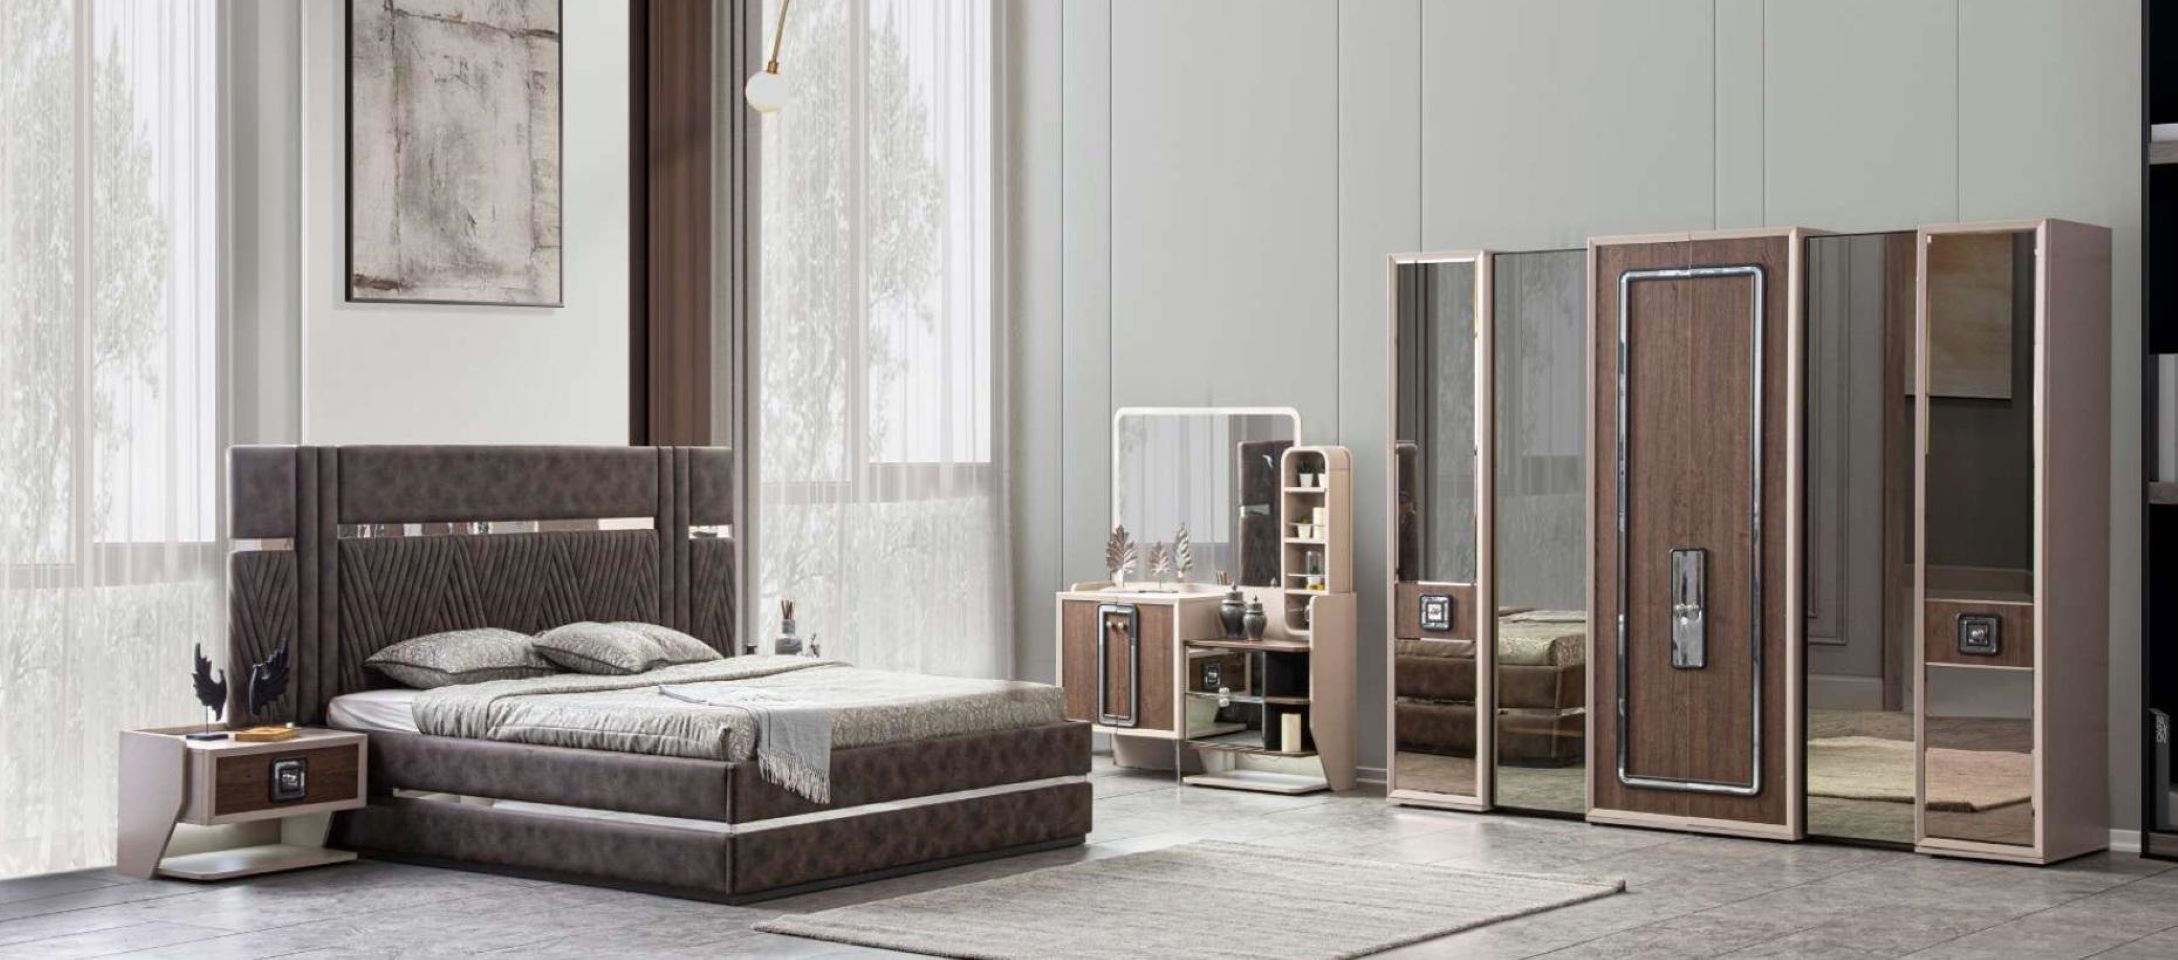 JVmoebel Schlafzimmer-Set Modern Bett 2x Nachttische 5tlg Schlafzimmer Design Luxus Möbel Neu, (5-St., Bett + 2x Nachttische + Kleiderschrank + Schminktisch), Made in Europe | Komplett-Jugendzimmer